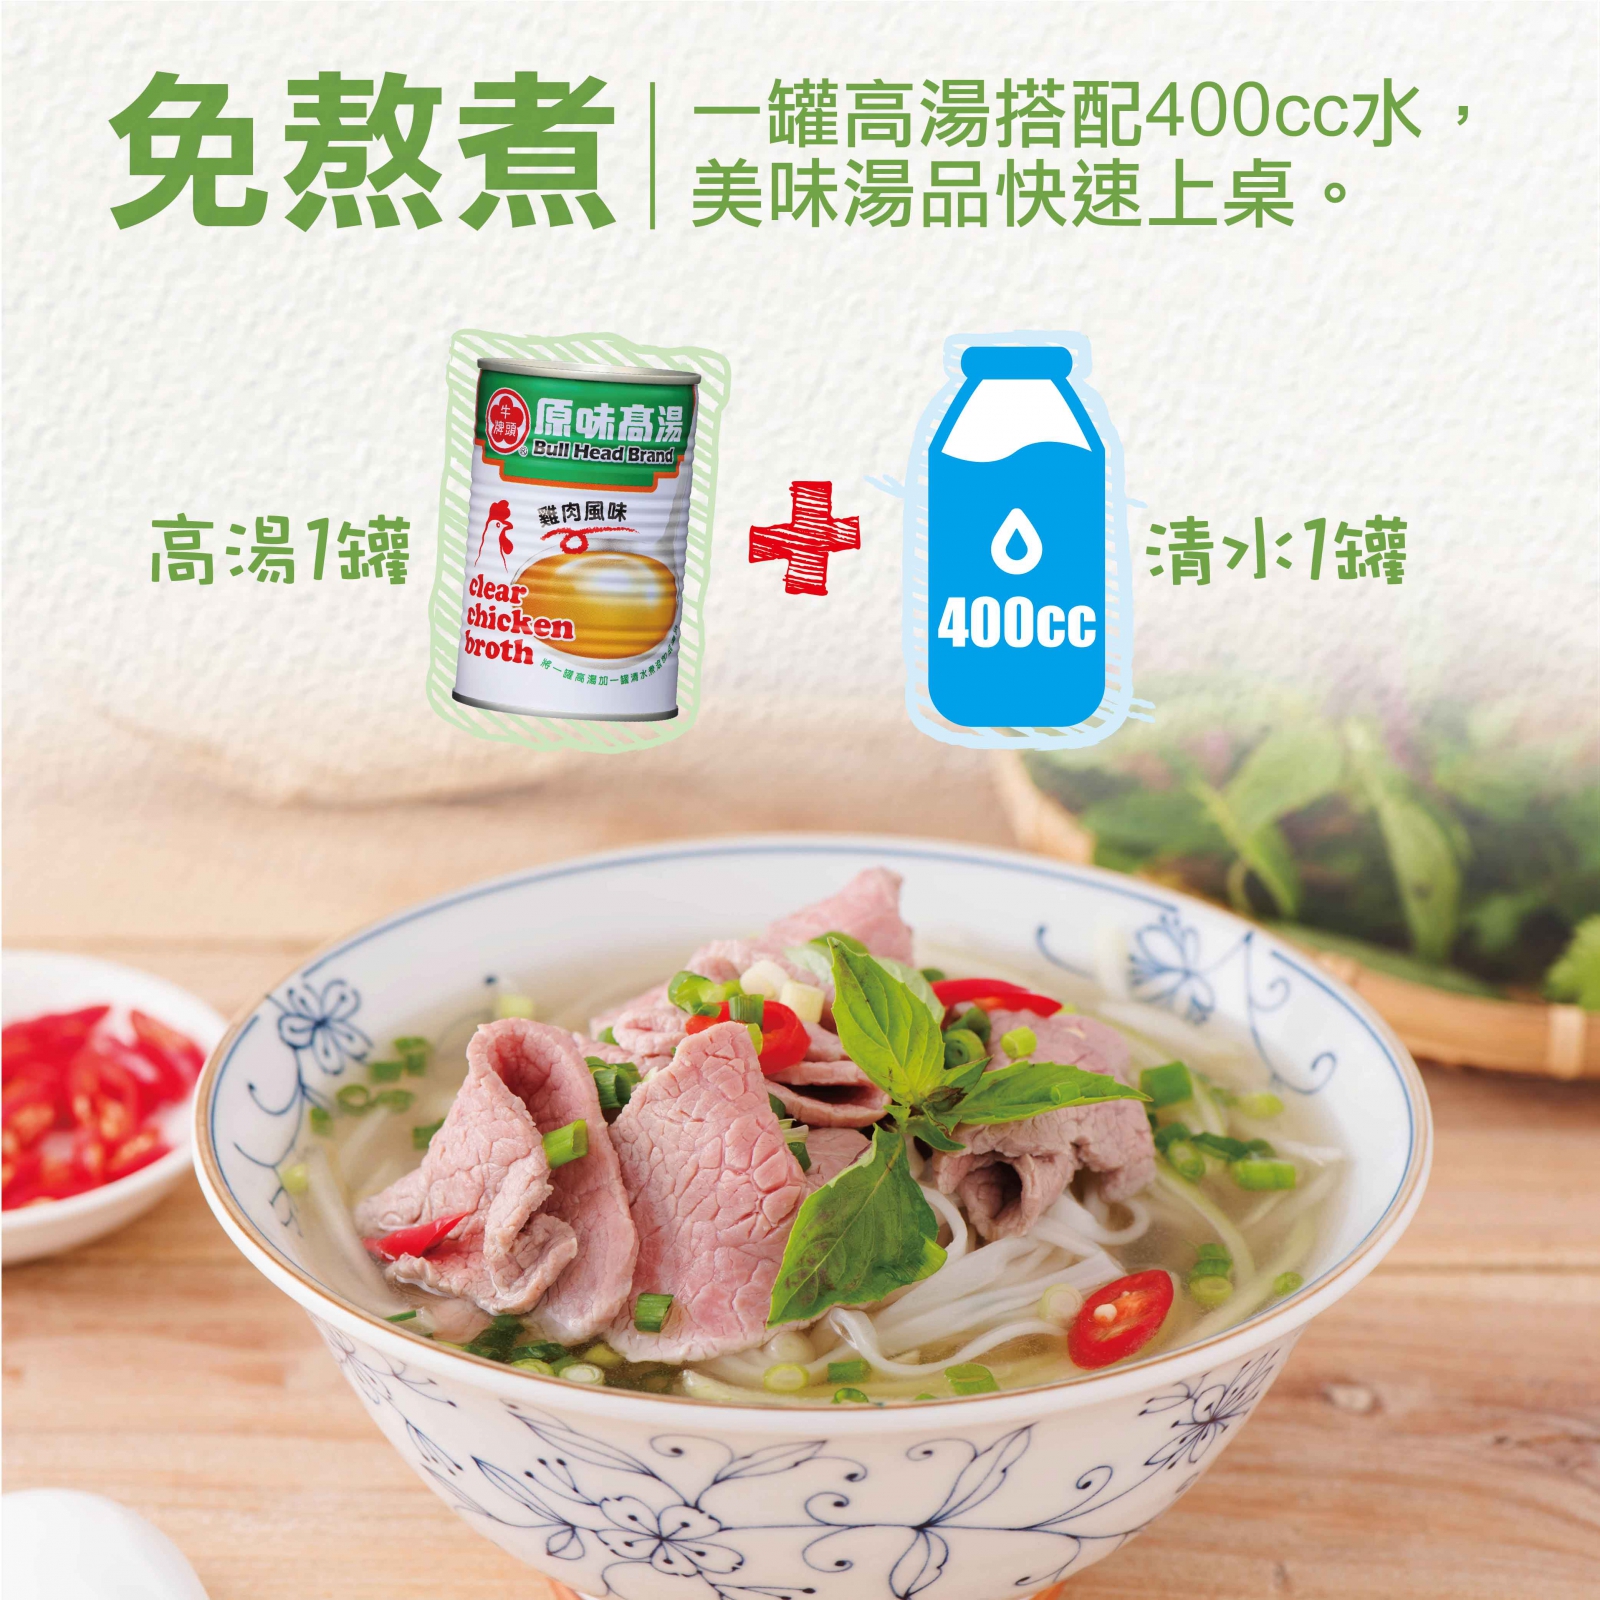 原味高湯-雞肉風味411ml-1罐高湯搭配400cc水，免熬煮，美味湯品快速上桌。